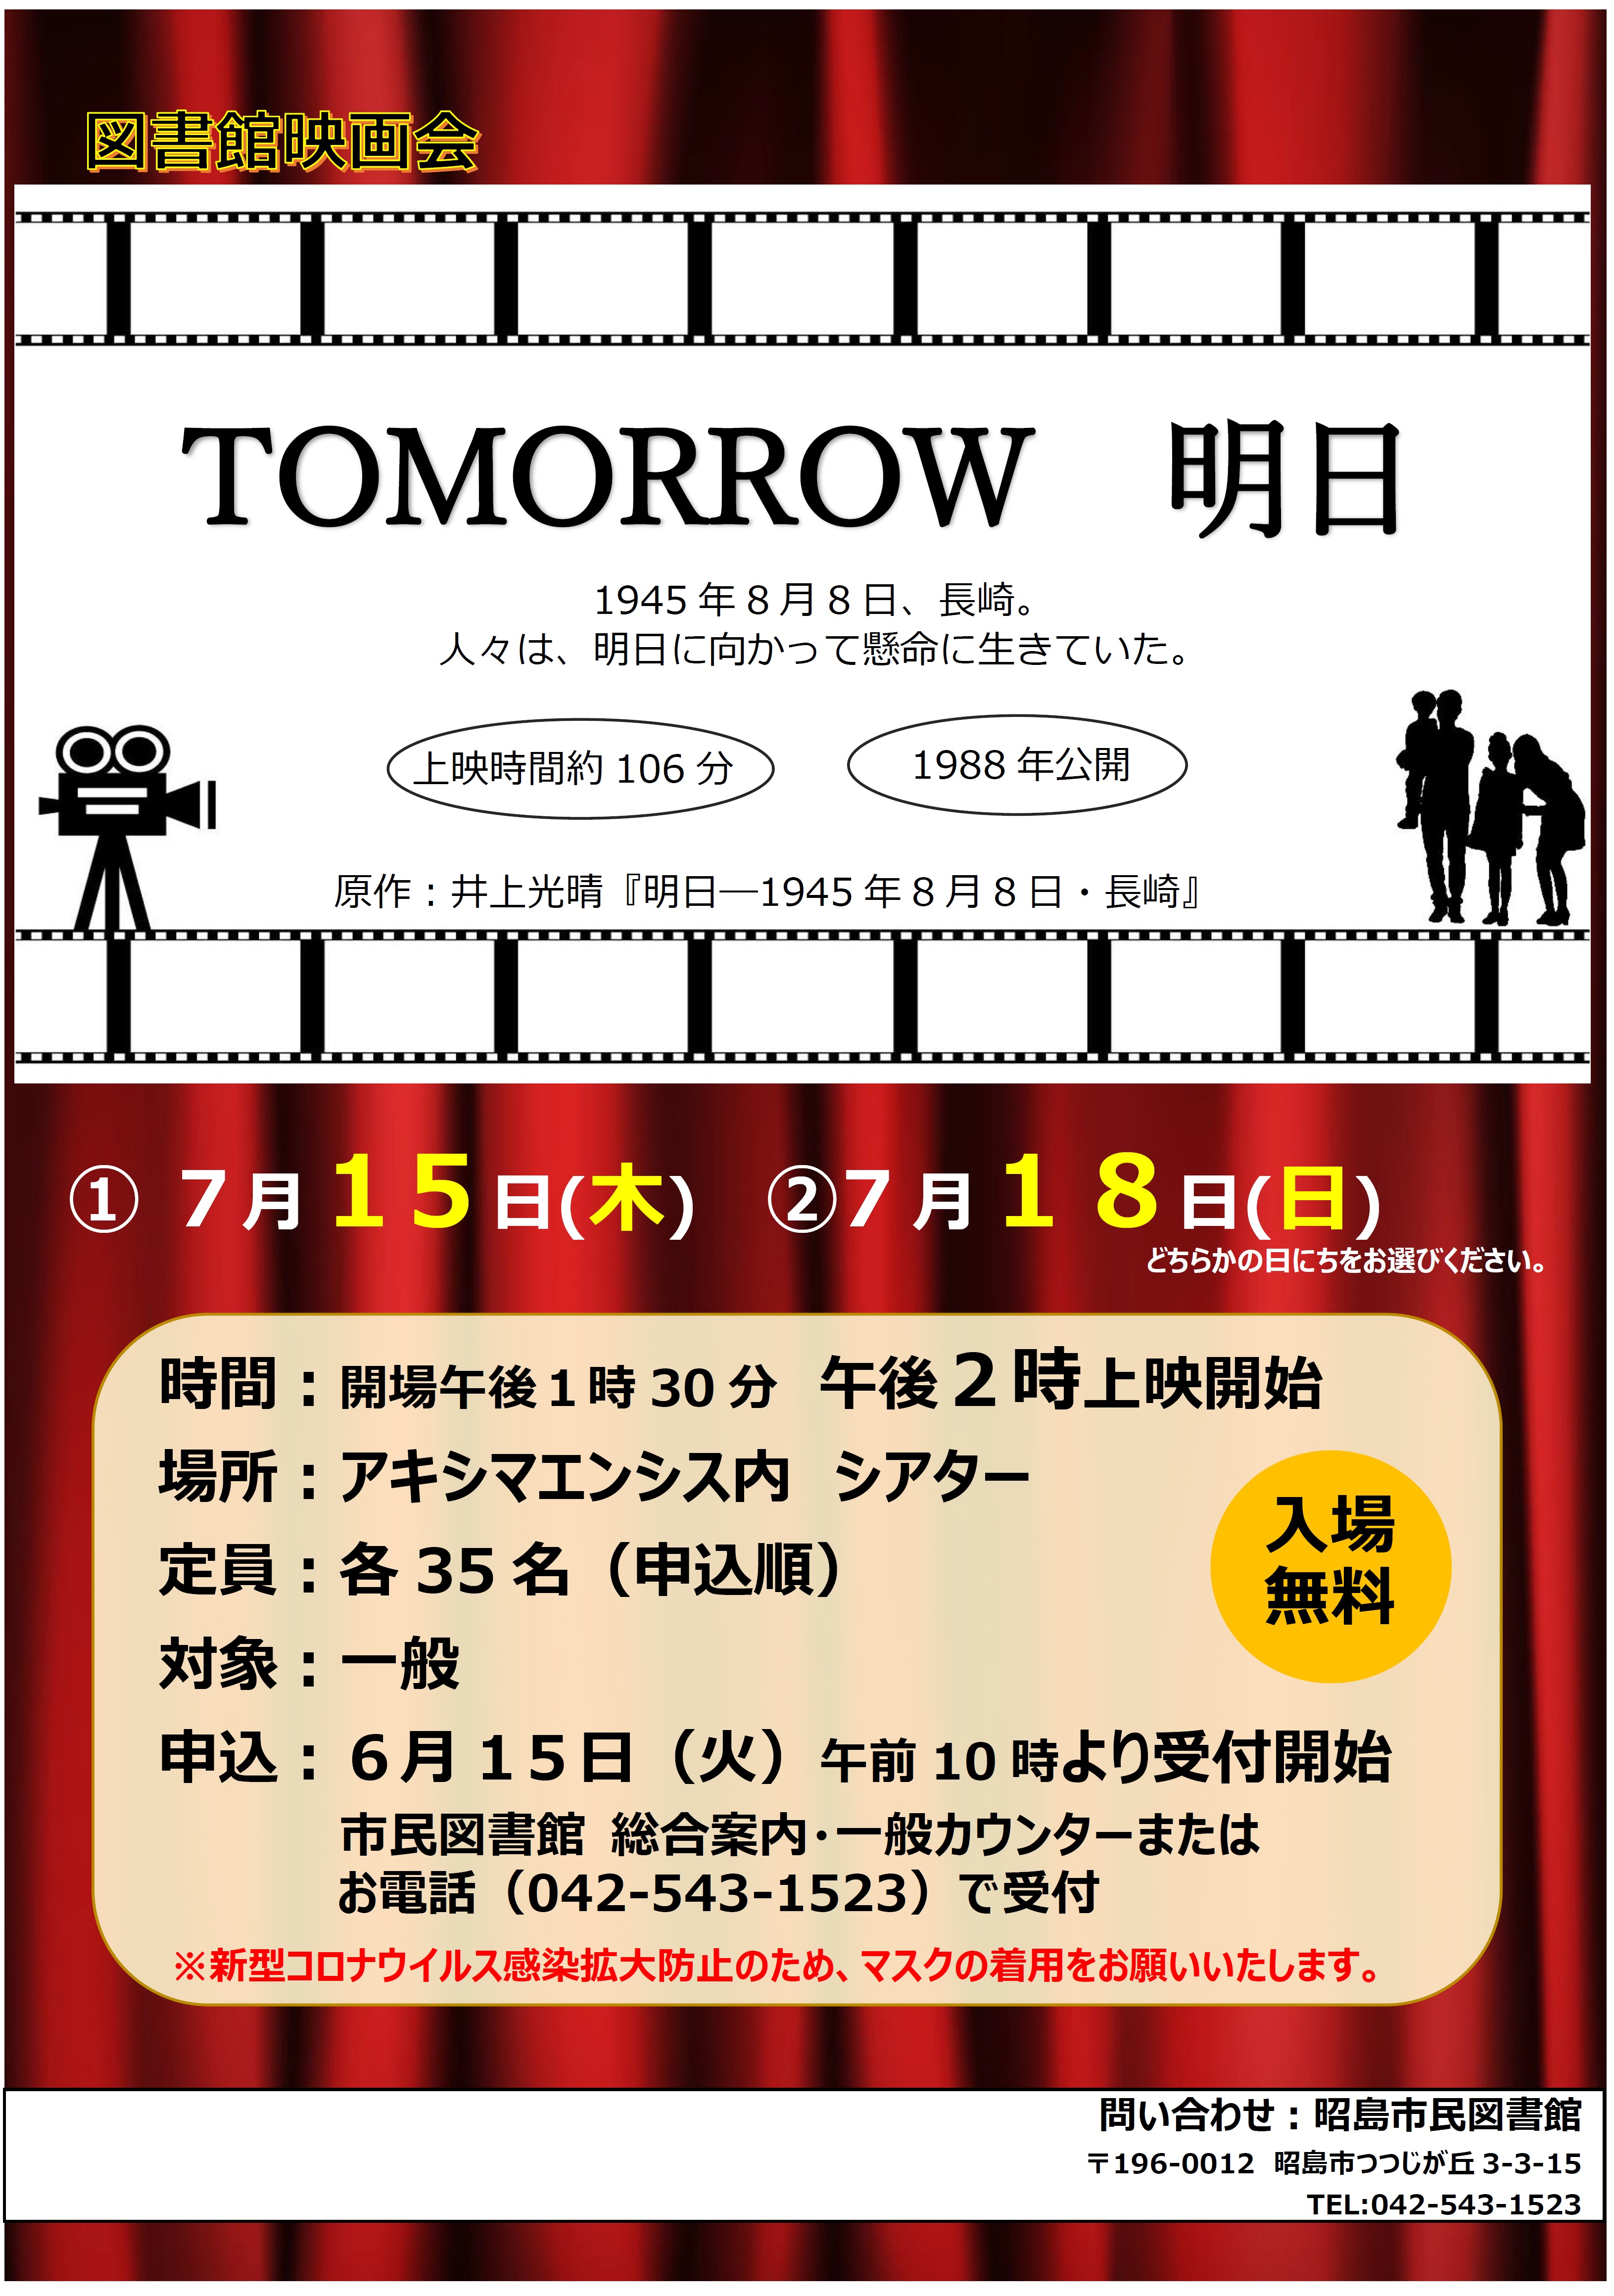 図書館映画会『tomorrow 明日』のお知らせポスターのサムネイル画像